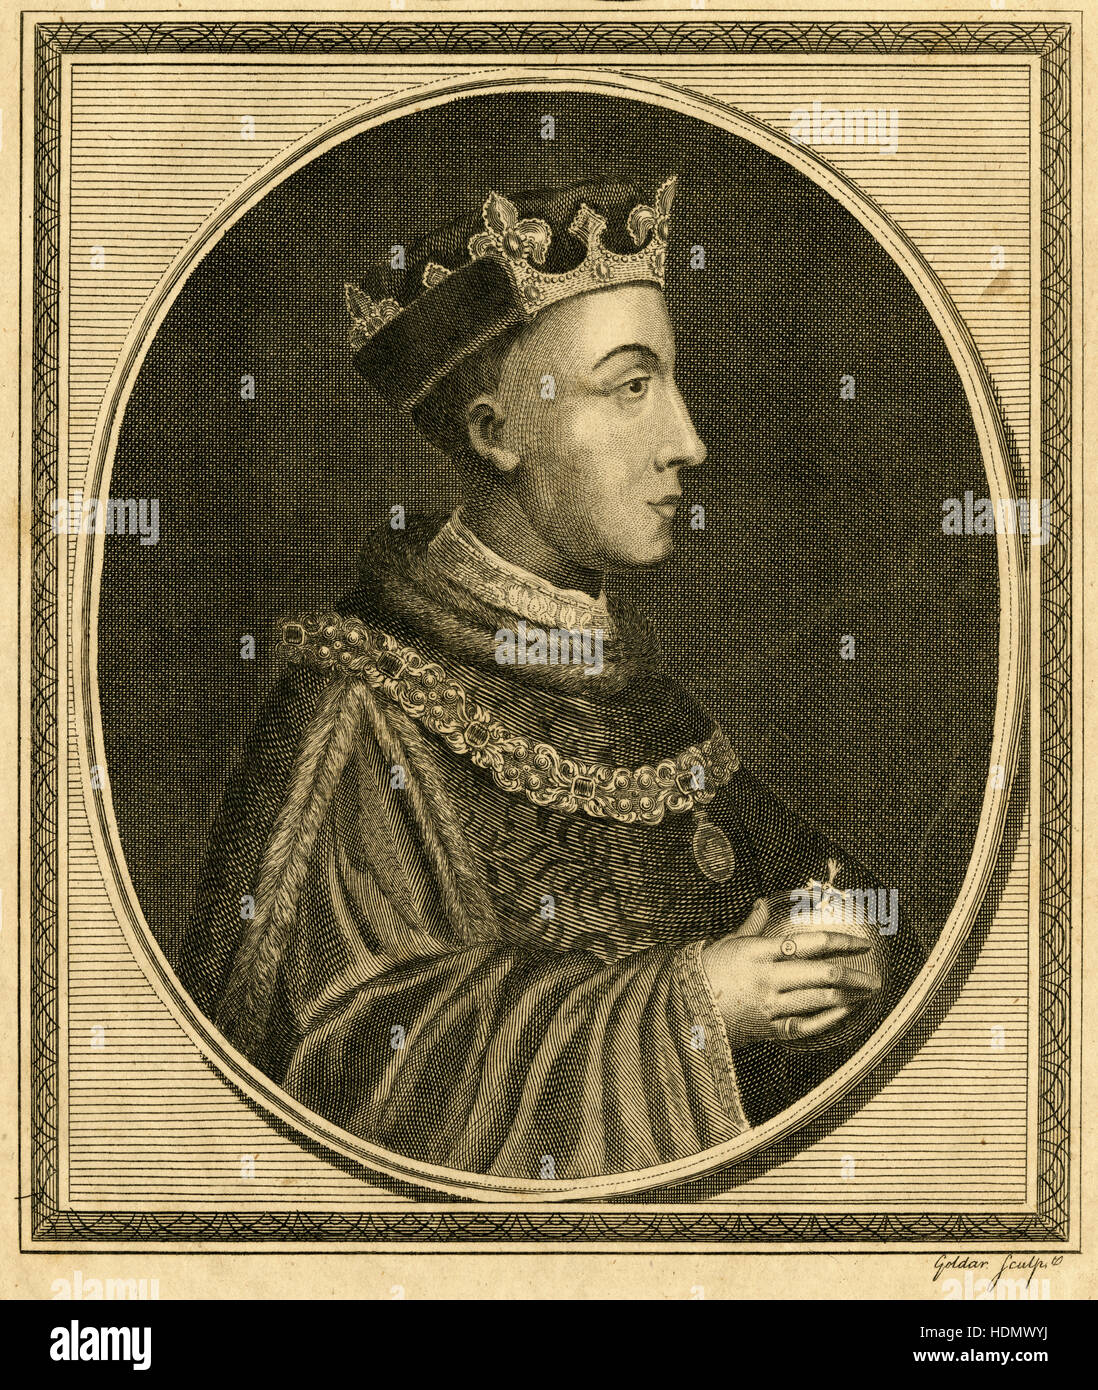 Antiken 1785 Gravur, König Heinrich V. Henry V (1386-1422) war König von England von 1413 bis zu seinem Tod im Alter von 36 im Jahr 1422. Er war der zweite englische Monarch kamen aus dem Haus Lancaster. QUELLE: ORIGINAL GRAVUR. Stockfoto